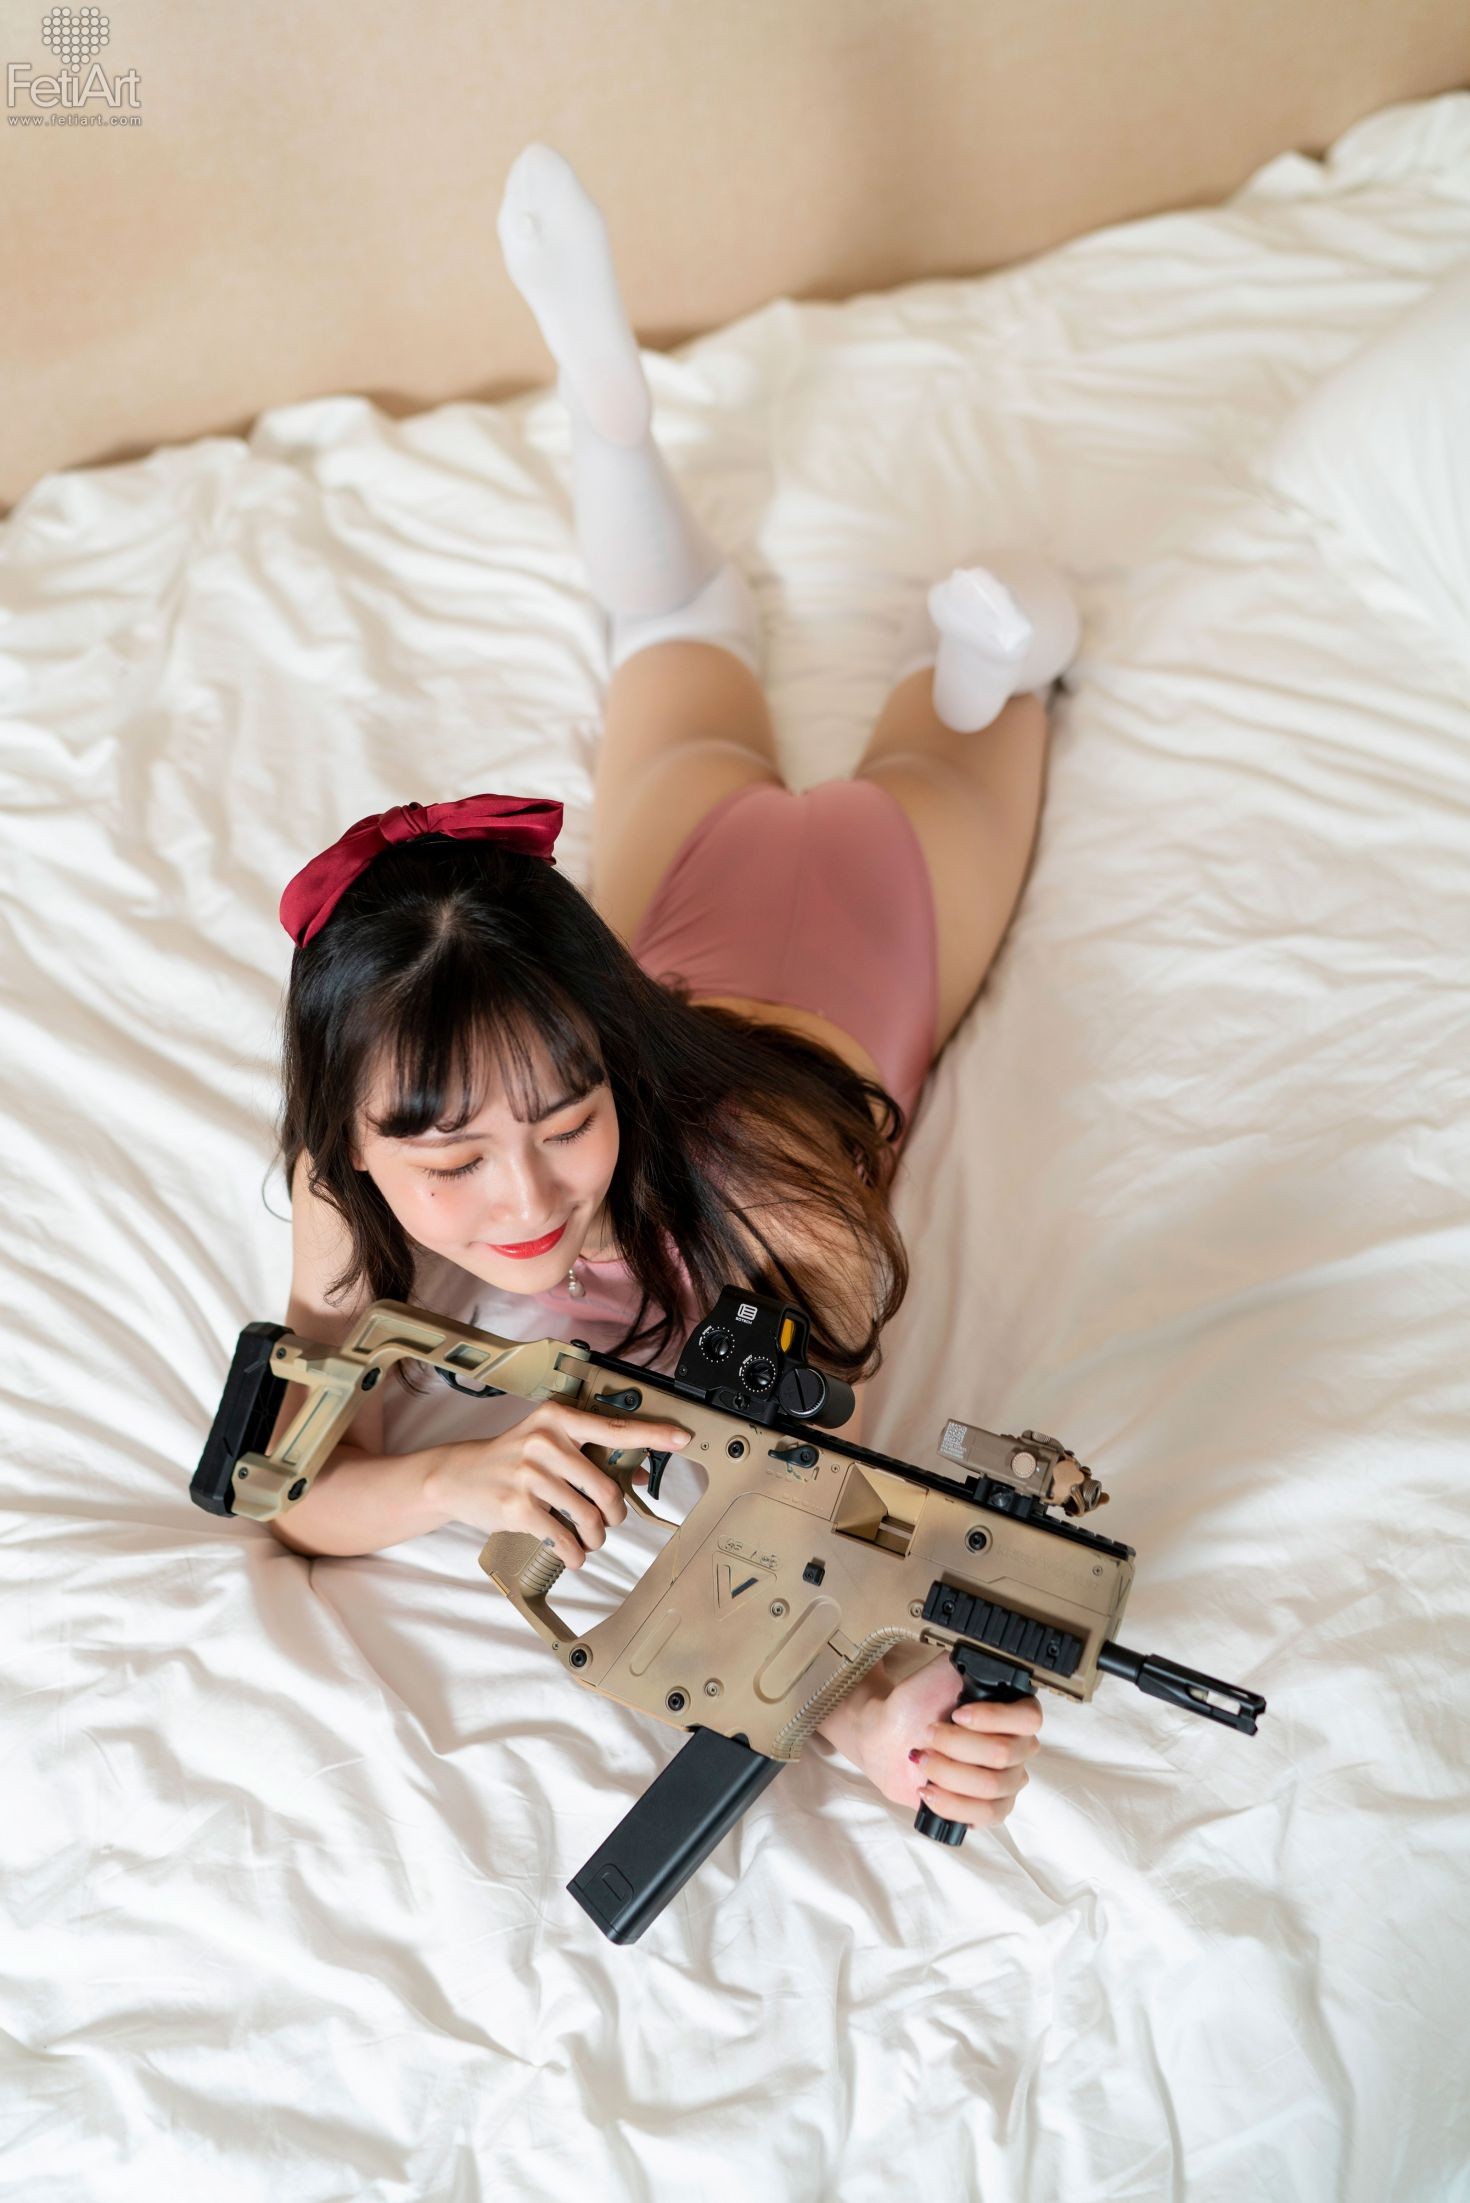 FetiArt尚物集 No.019 Gunslinger Girl MODEL Mmi (20)